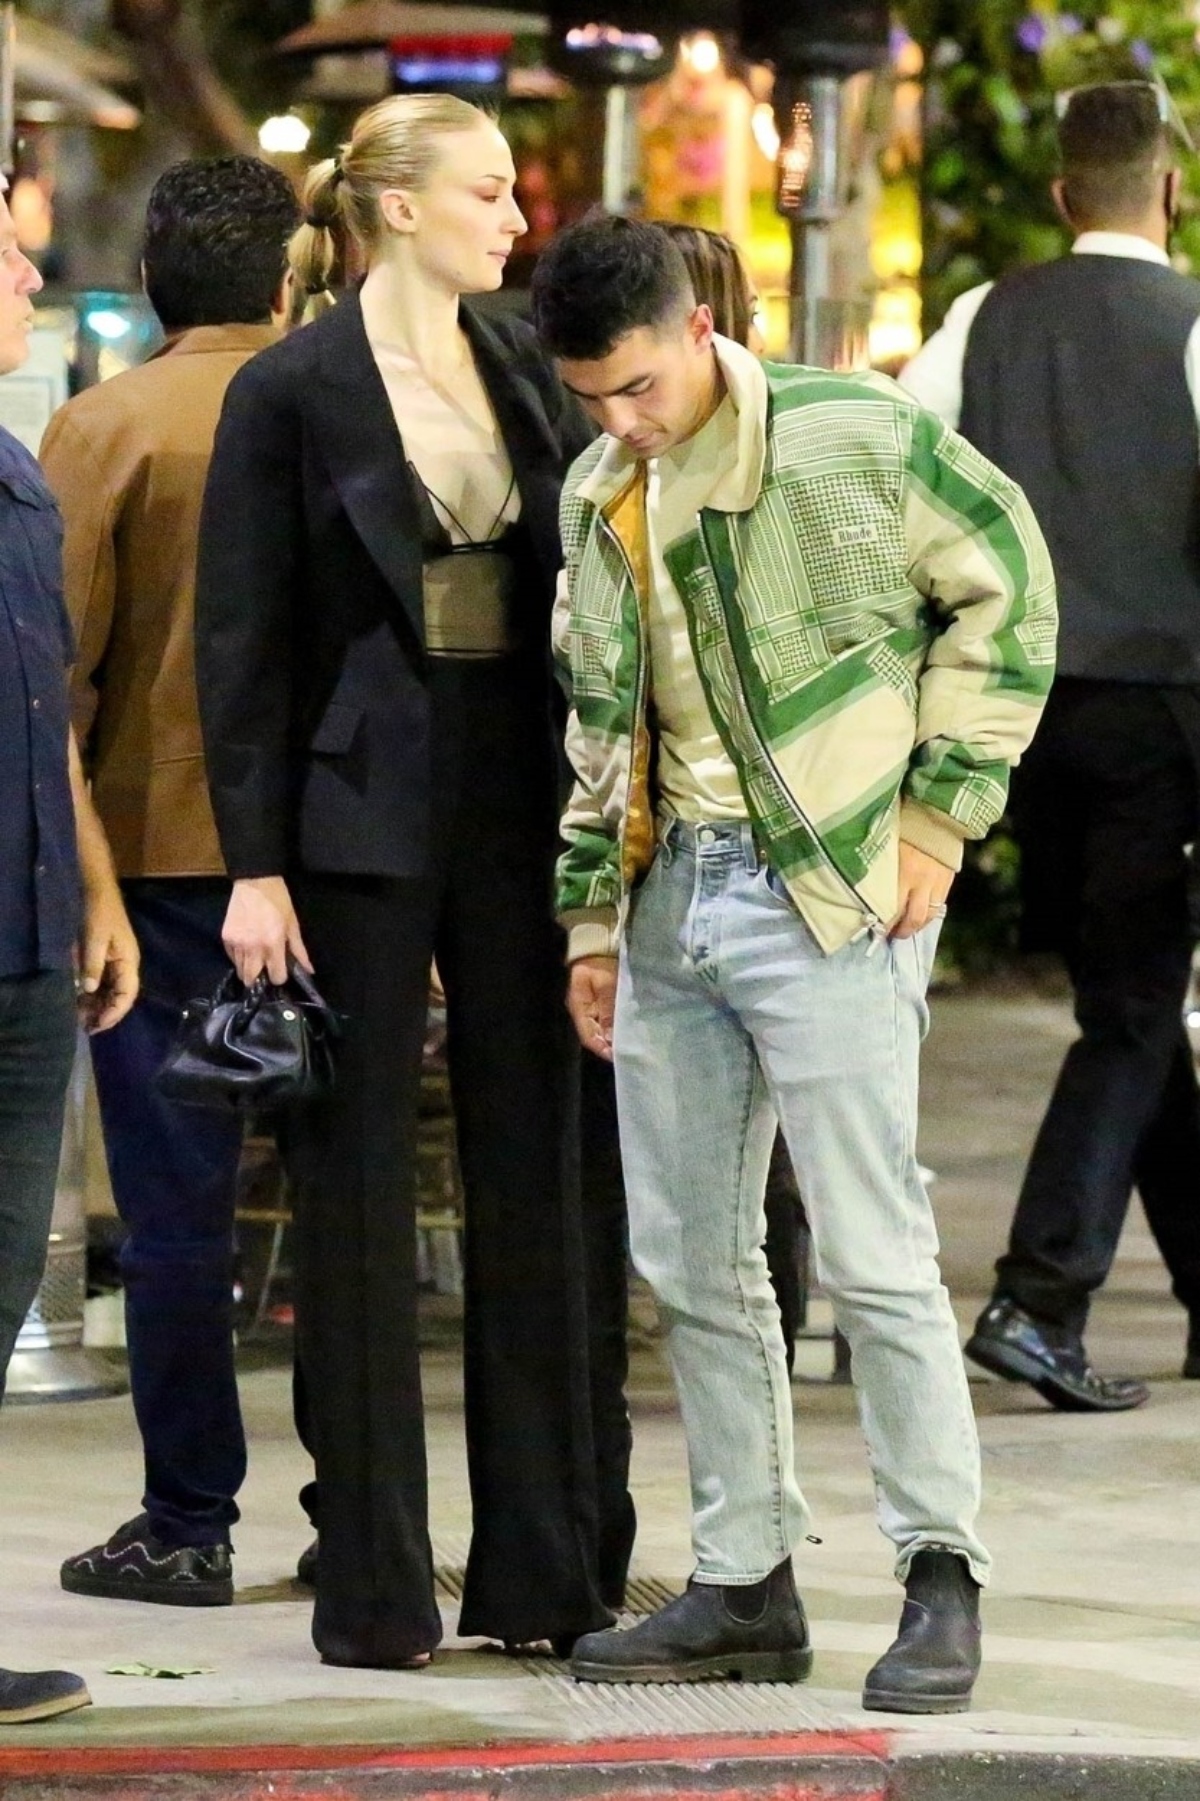 Sophie Turner, împreună cu Joe Jonas, ies dintr-un restaurant. Ea poartă o ținută sexy, în timp ce el este îmbrăcat casual